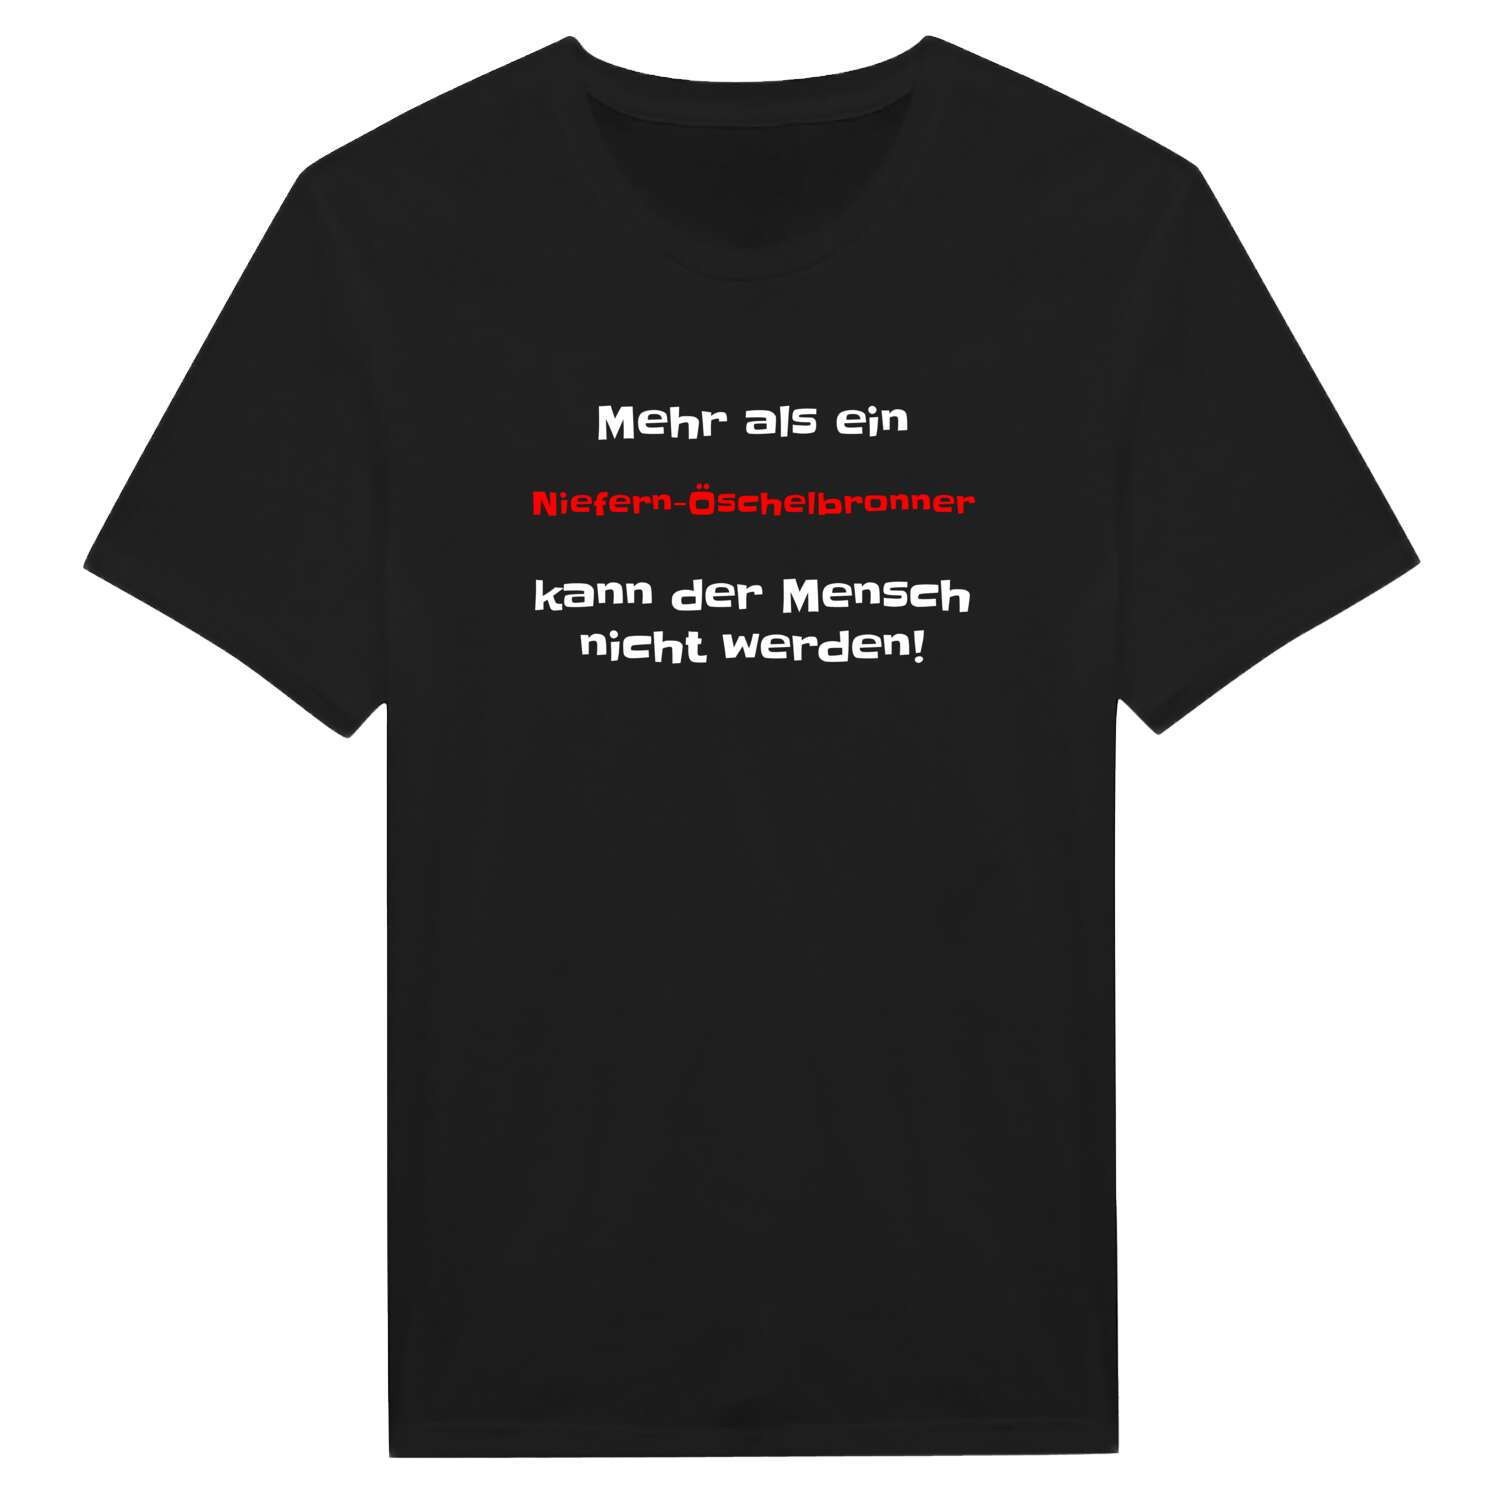 Niefern-Öschelbronn T-Shirt »Mehr als ein«